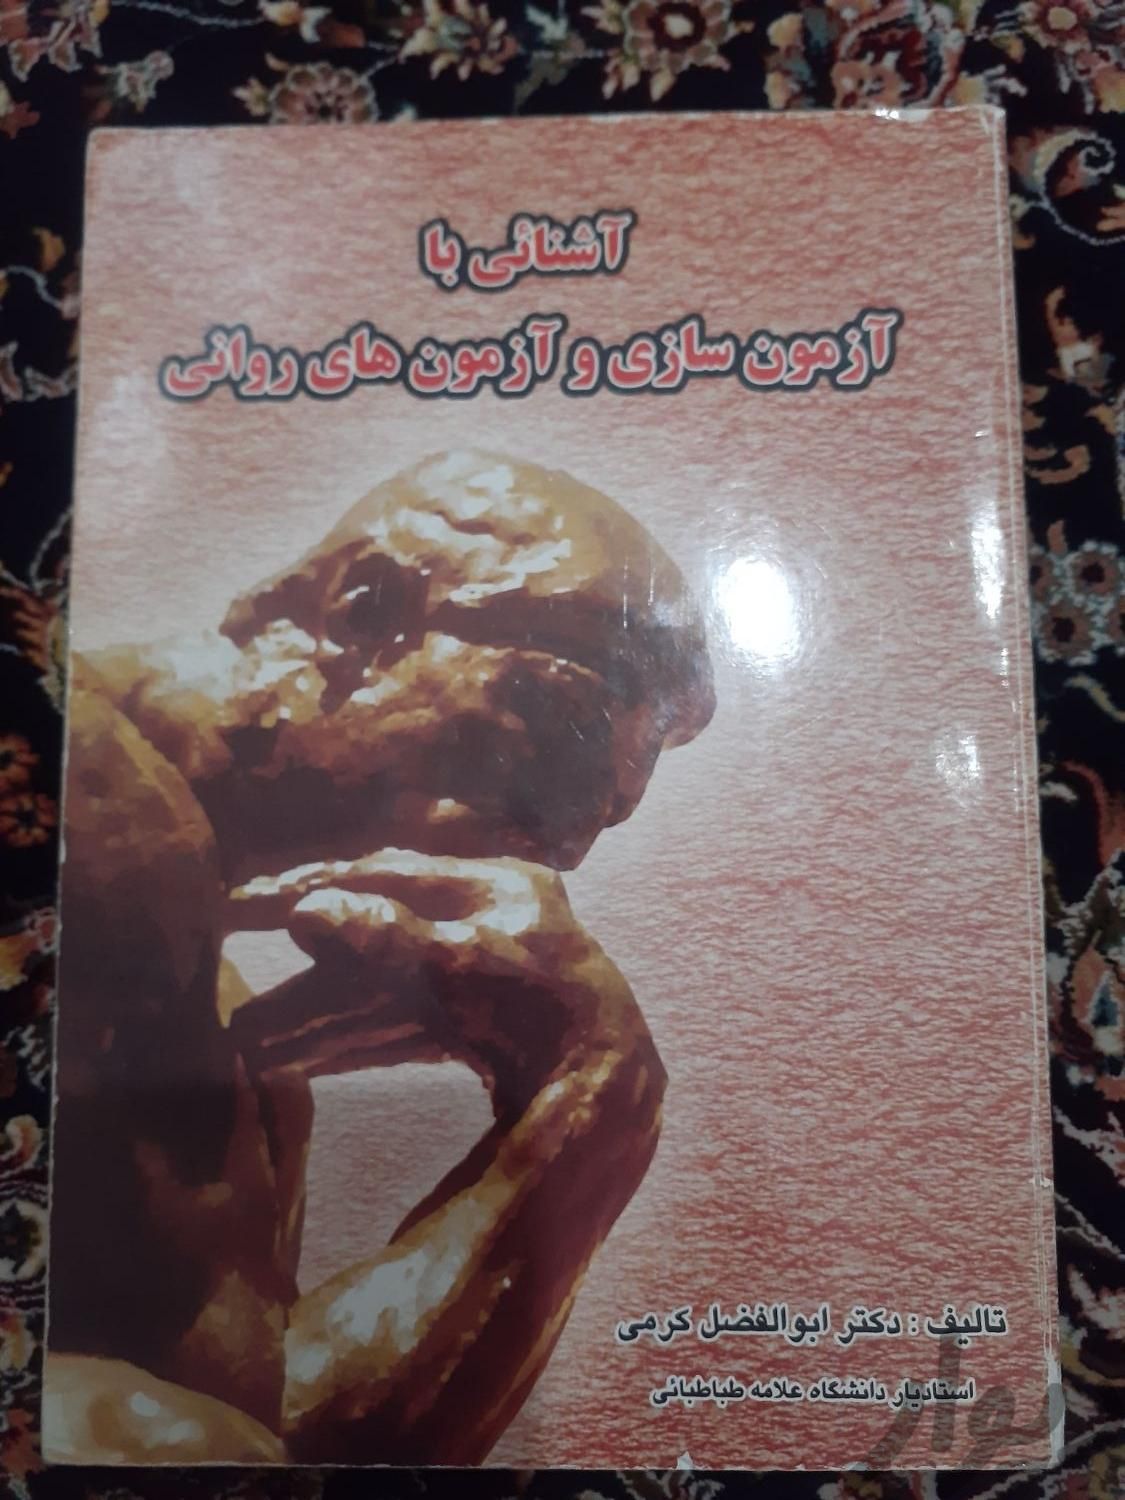 کتاب های روانشناسی|کتاب و مجله آموزشی|تهران, خزانه|دیوار